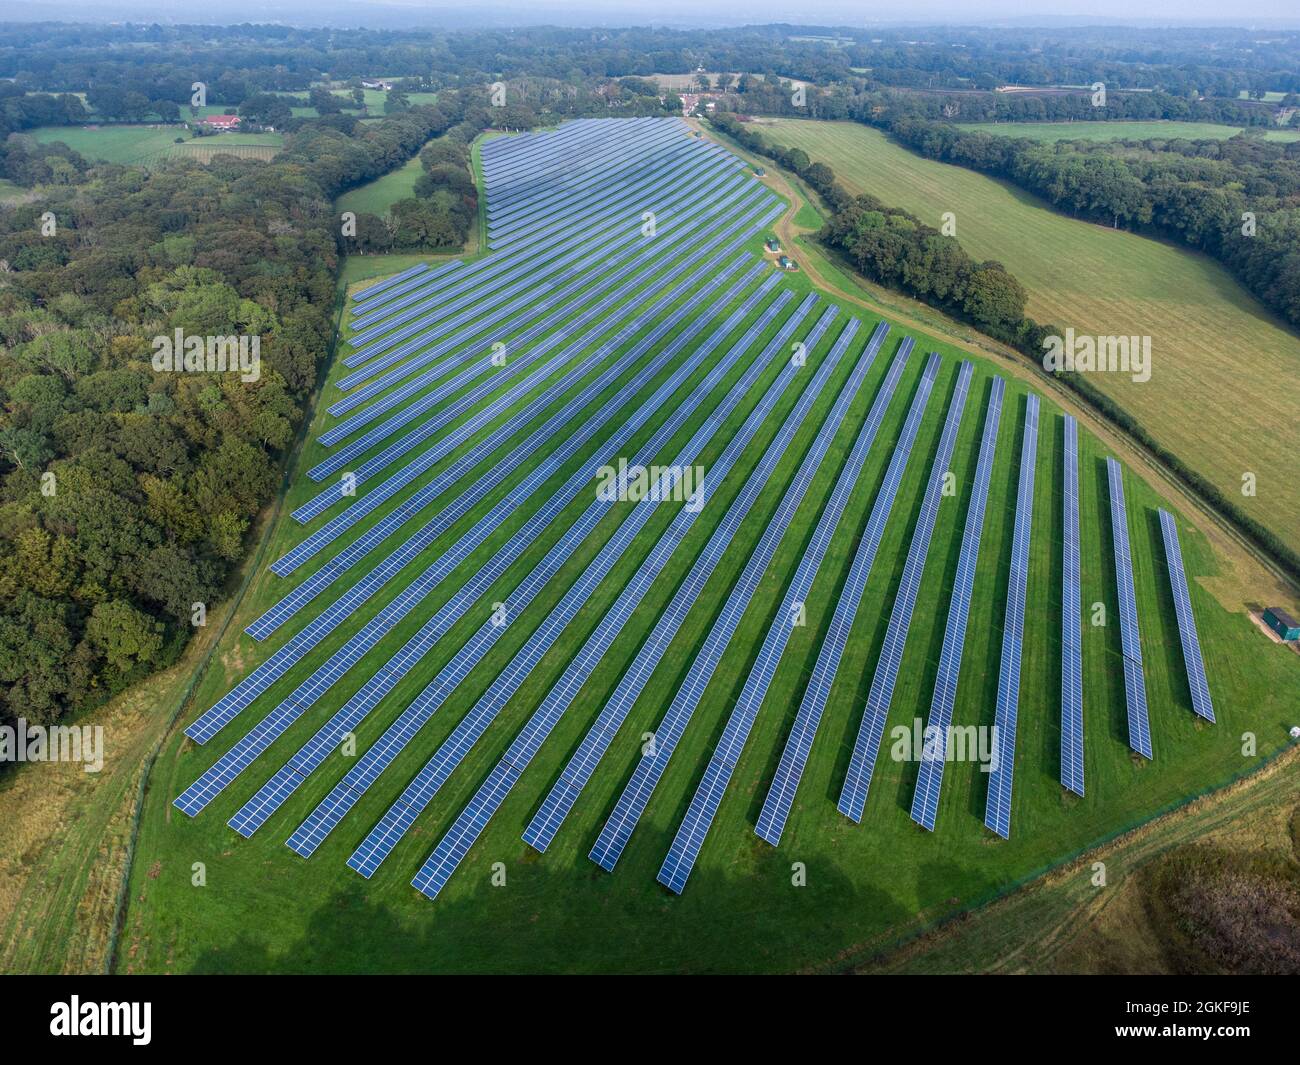 Vue aérienne d'une grande centrale solaire commerciale produisant de l'énergie verte propre au réseau électrique national (West Sussex) Royaume-Uni Banque D'Images